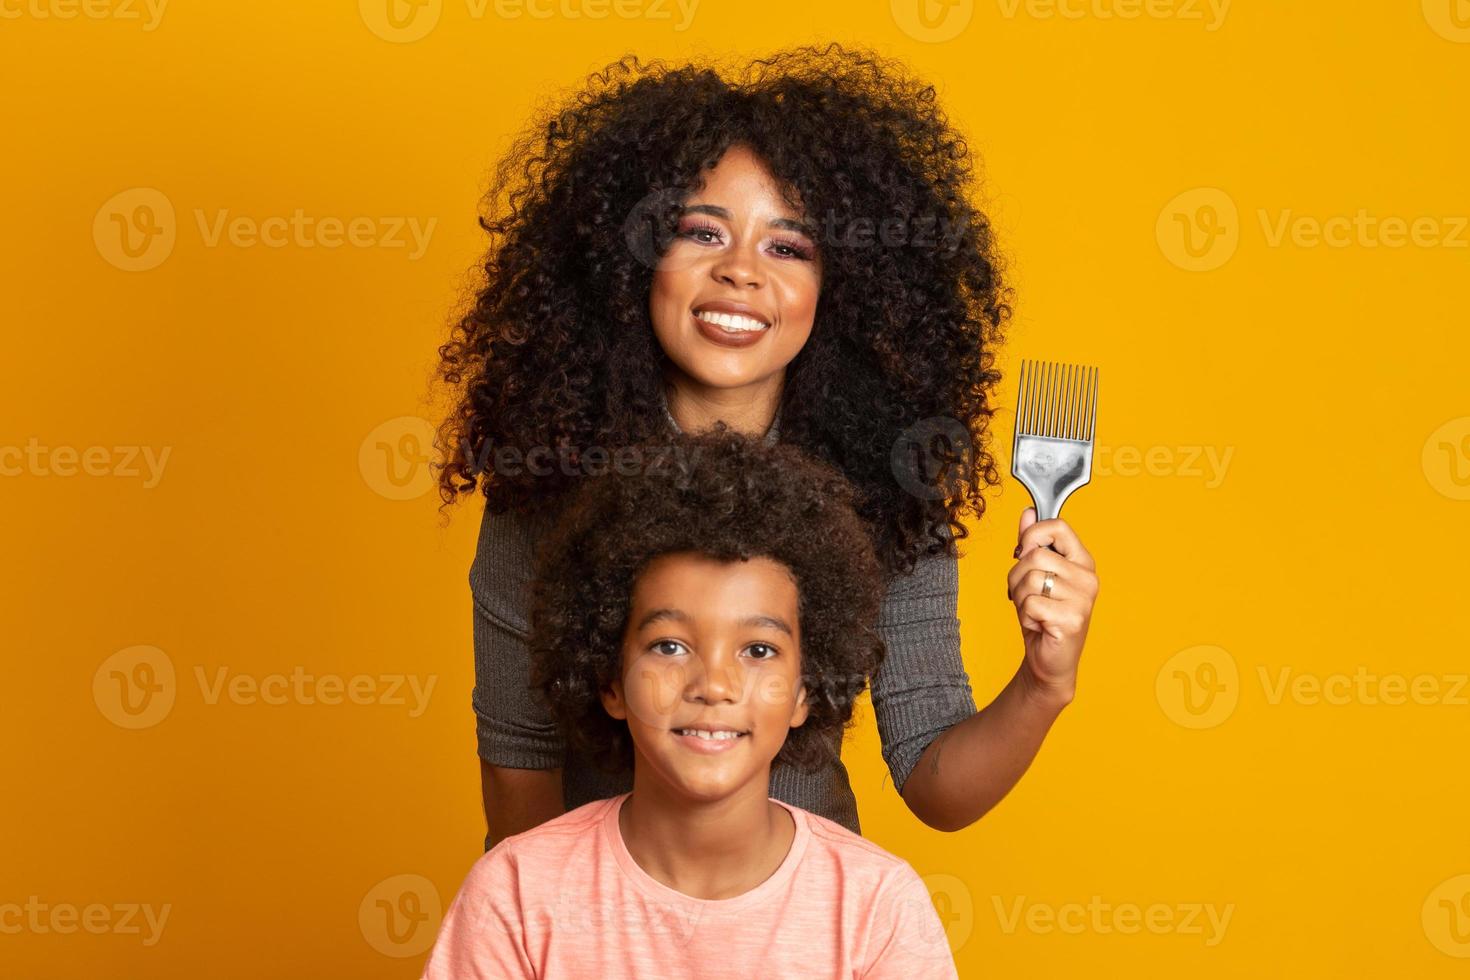 jóvenes afroamericanos peinándose aislados. tenedor para peinar el cabello rizado. fondo amarillo foto